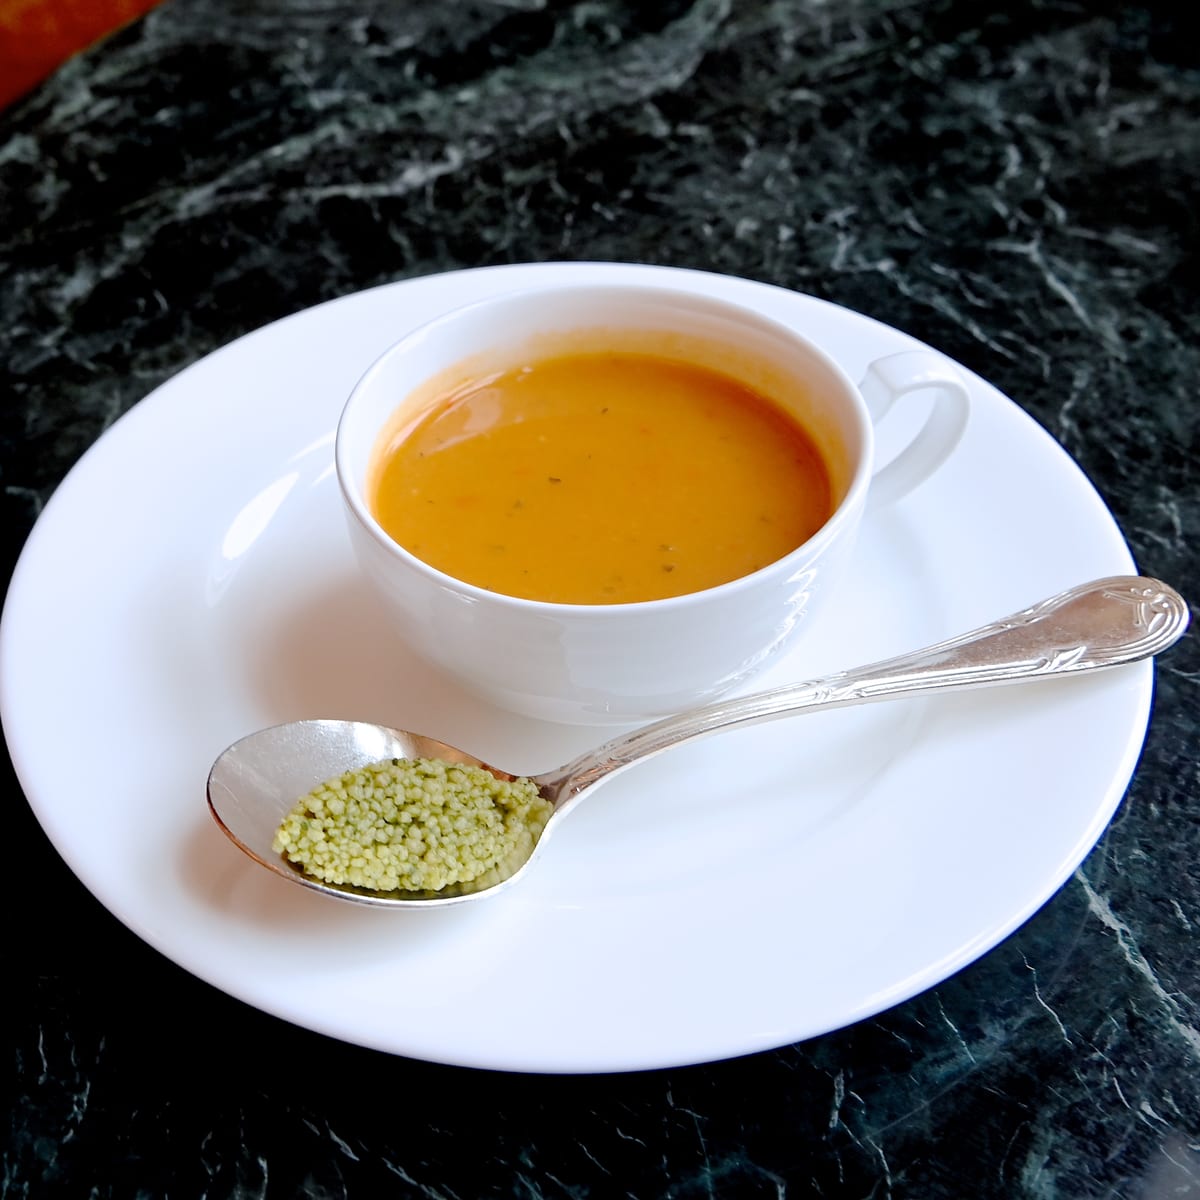 バジル風味の野菜スープ